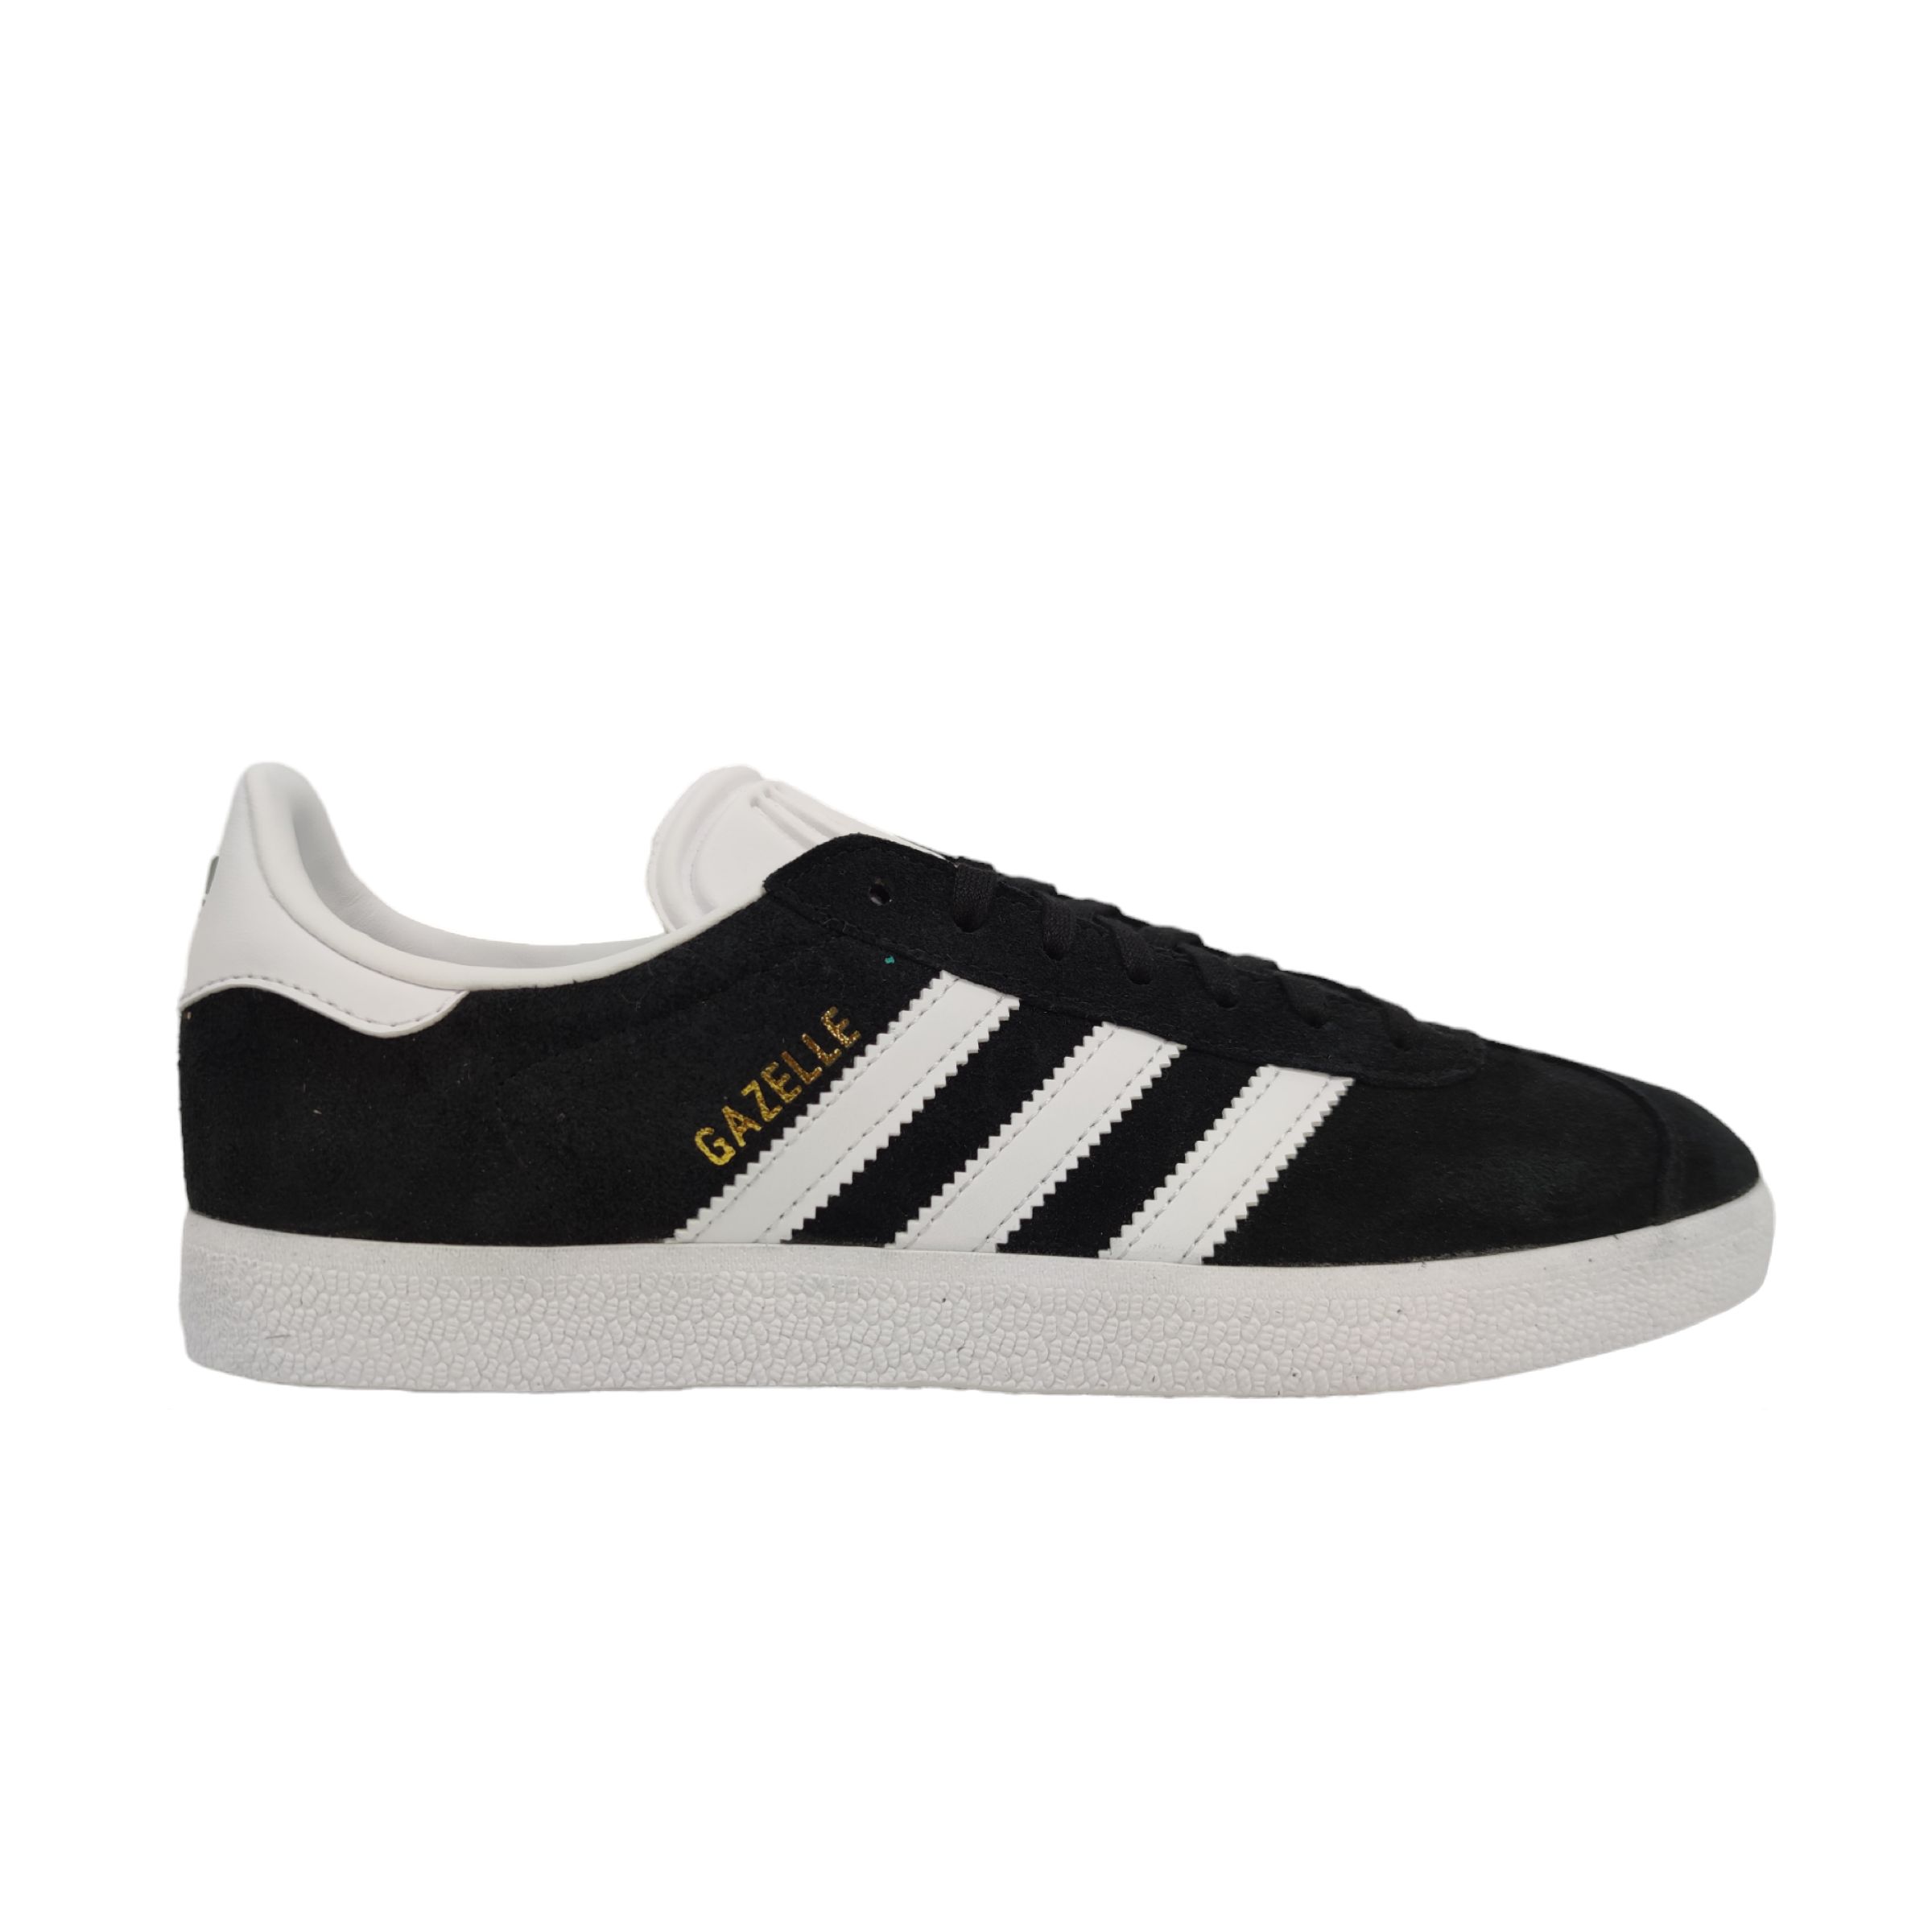 adidas-scarpe-gazelle-core-blackfootwear-whiteclear-granite